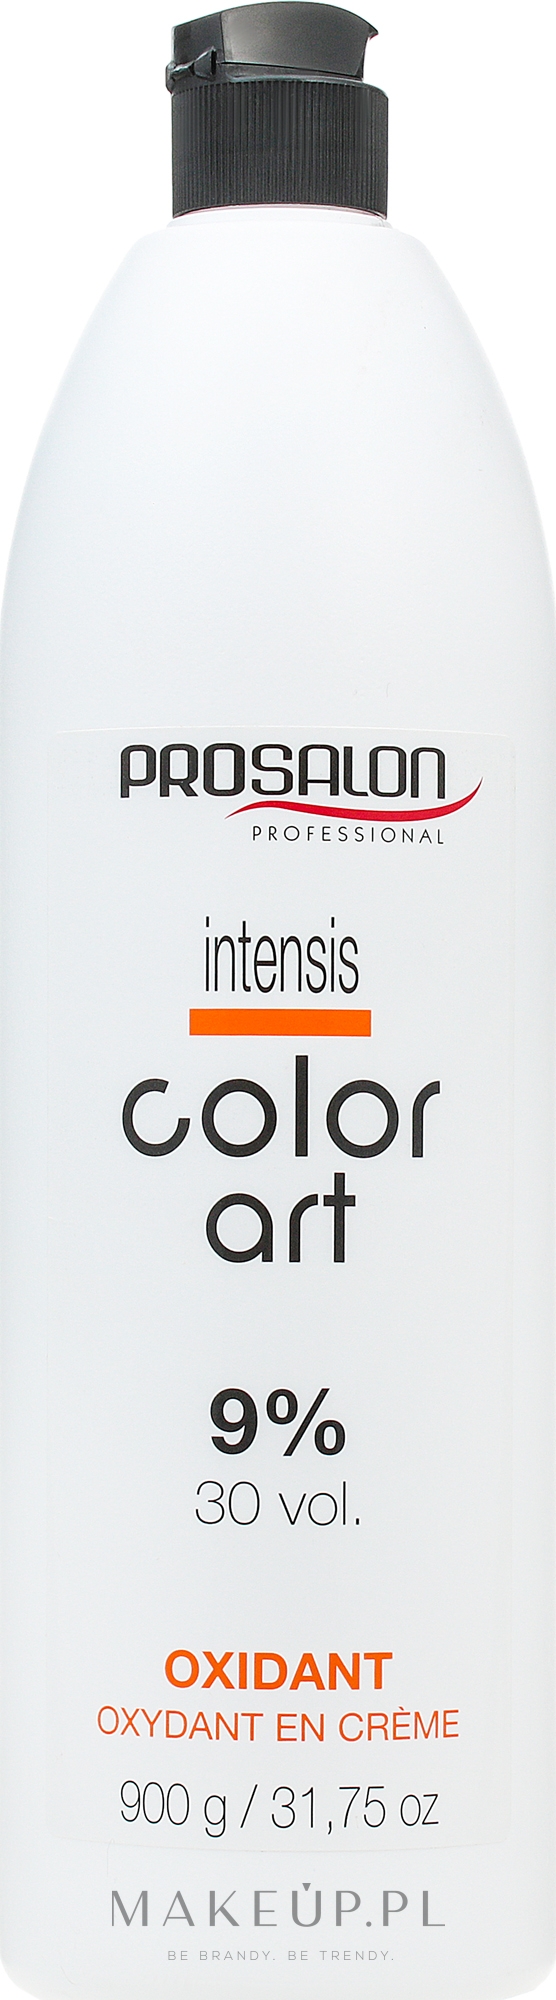 Utleniacz do włosów 9% - Prosalon Intensis Color Art Oxydant vol 30 — Zdjęcie 900 ml